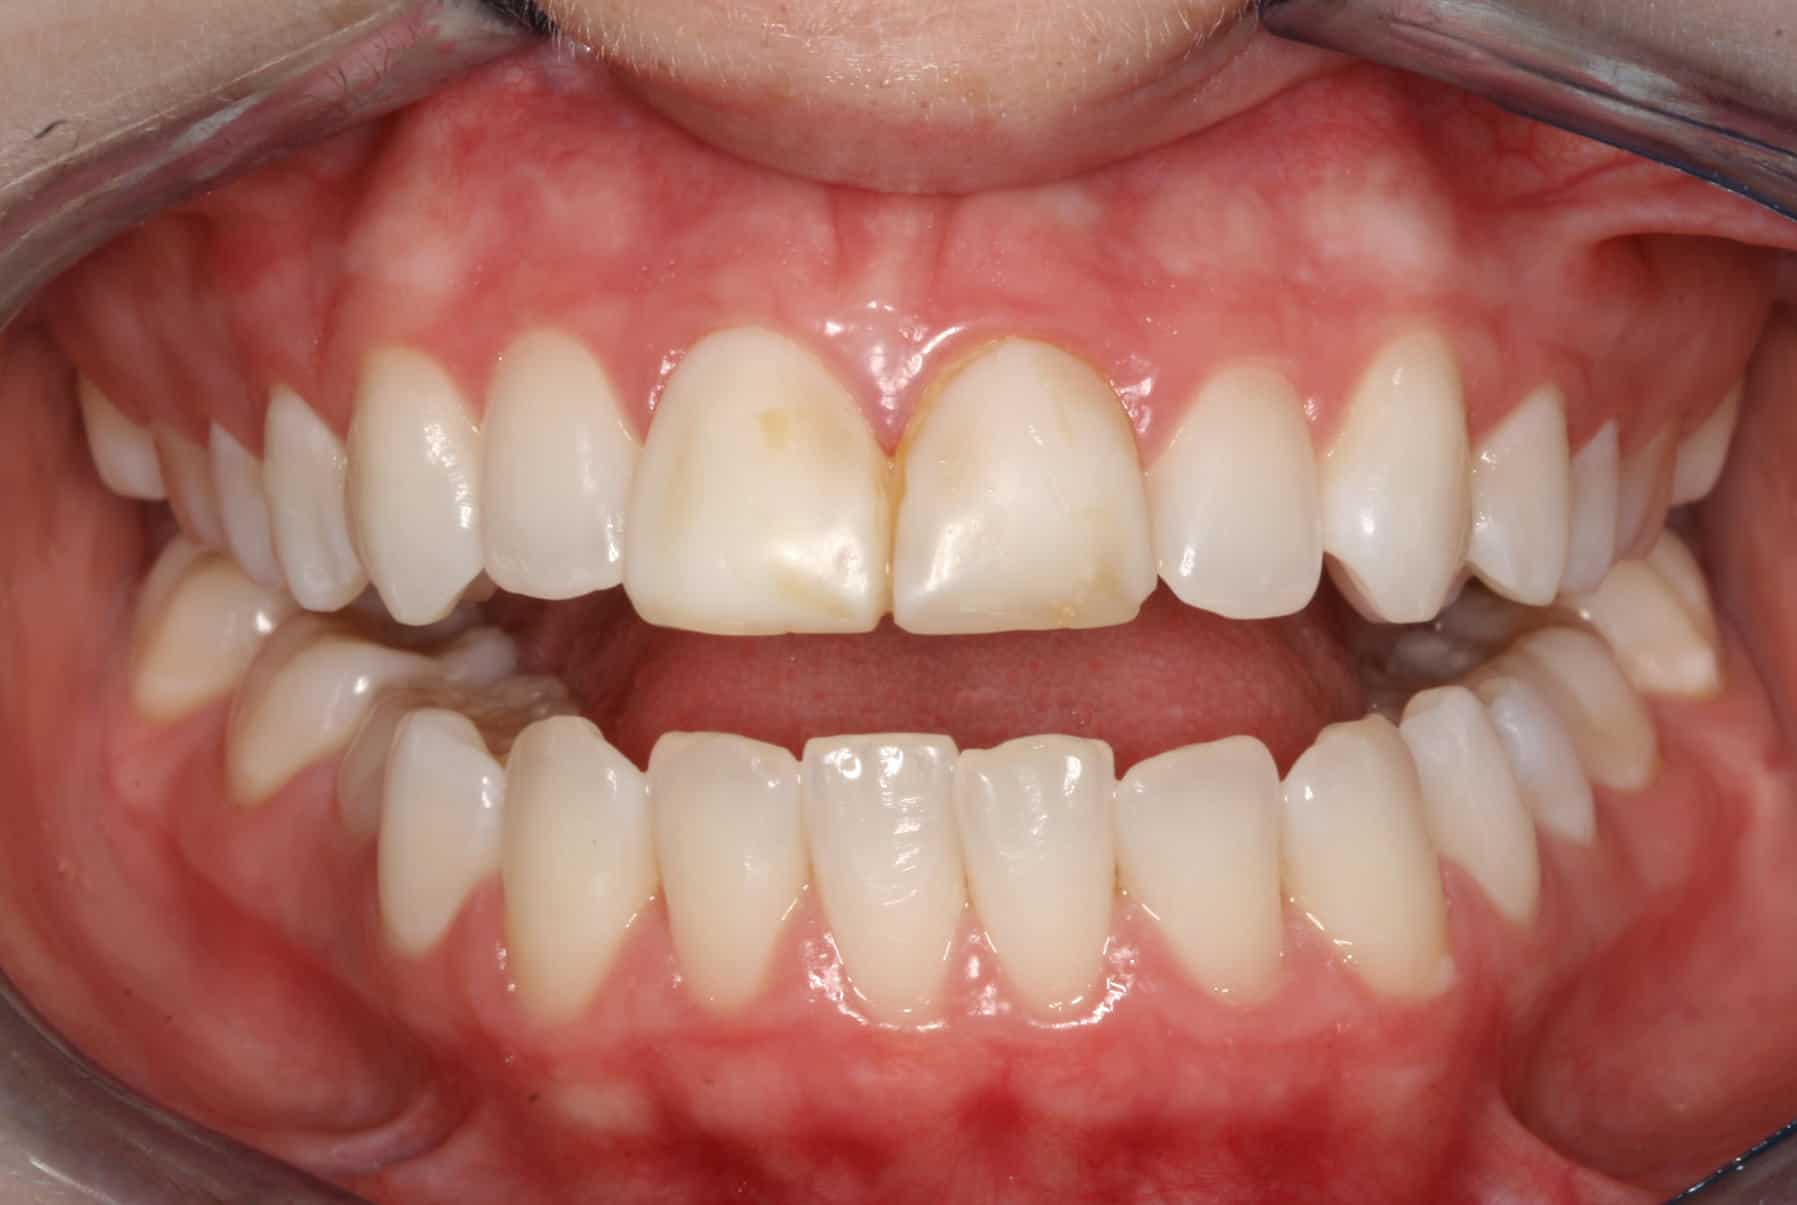 Burbank Dental Lab patient before veneers